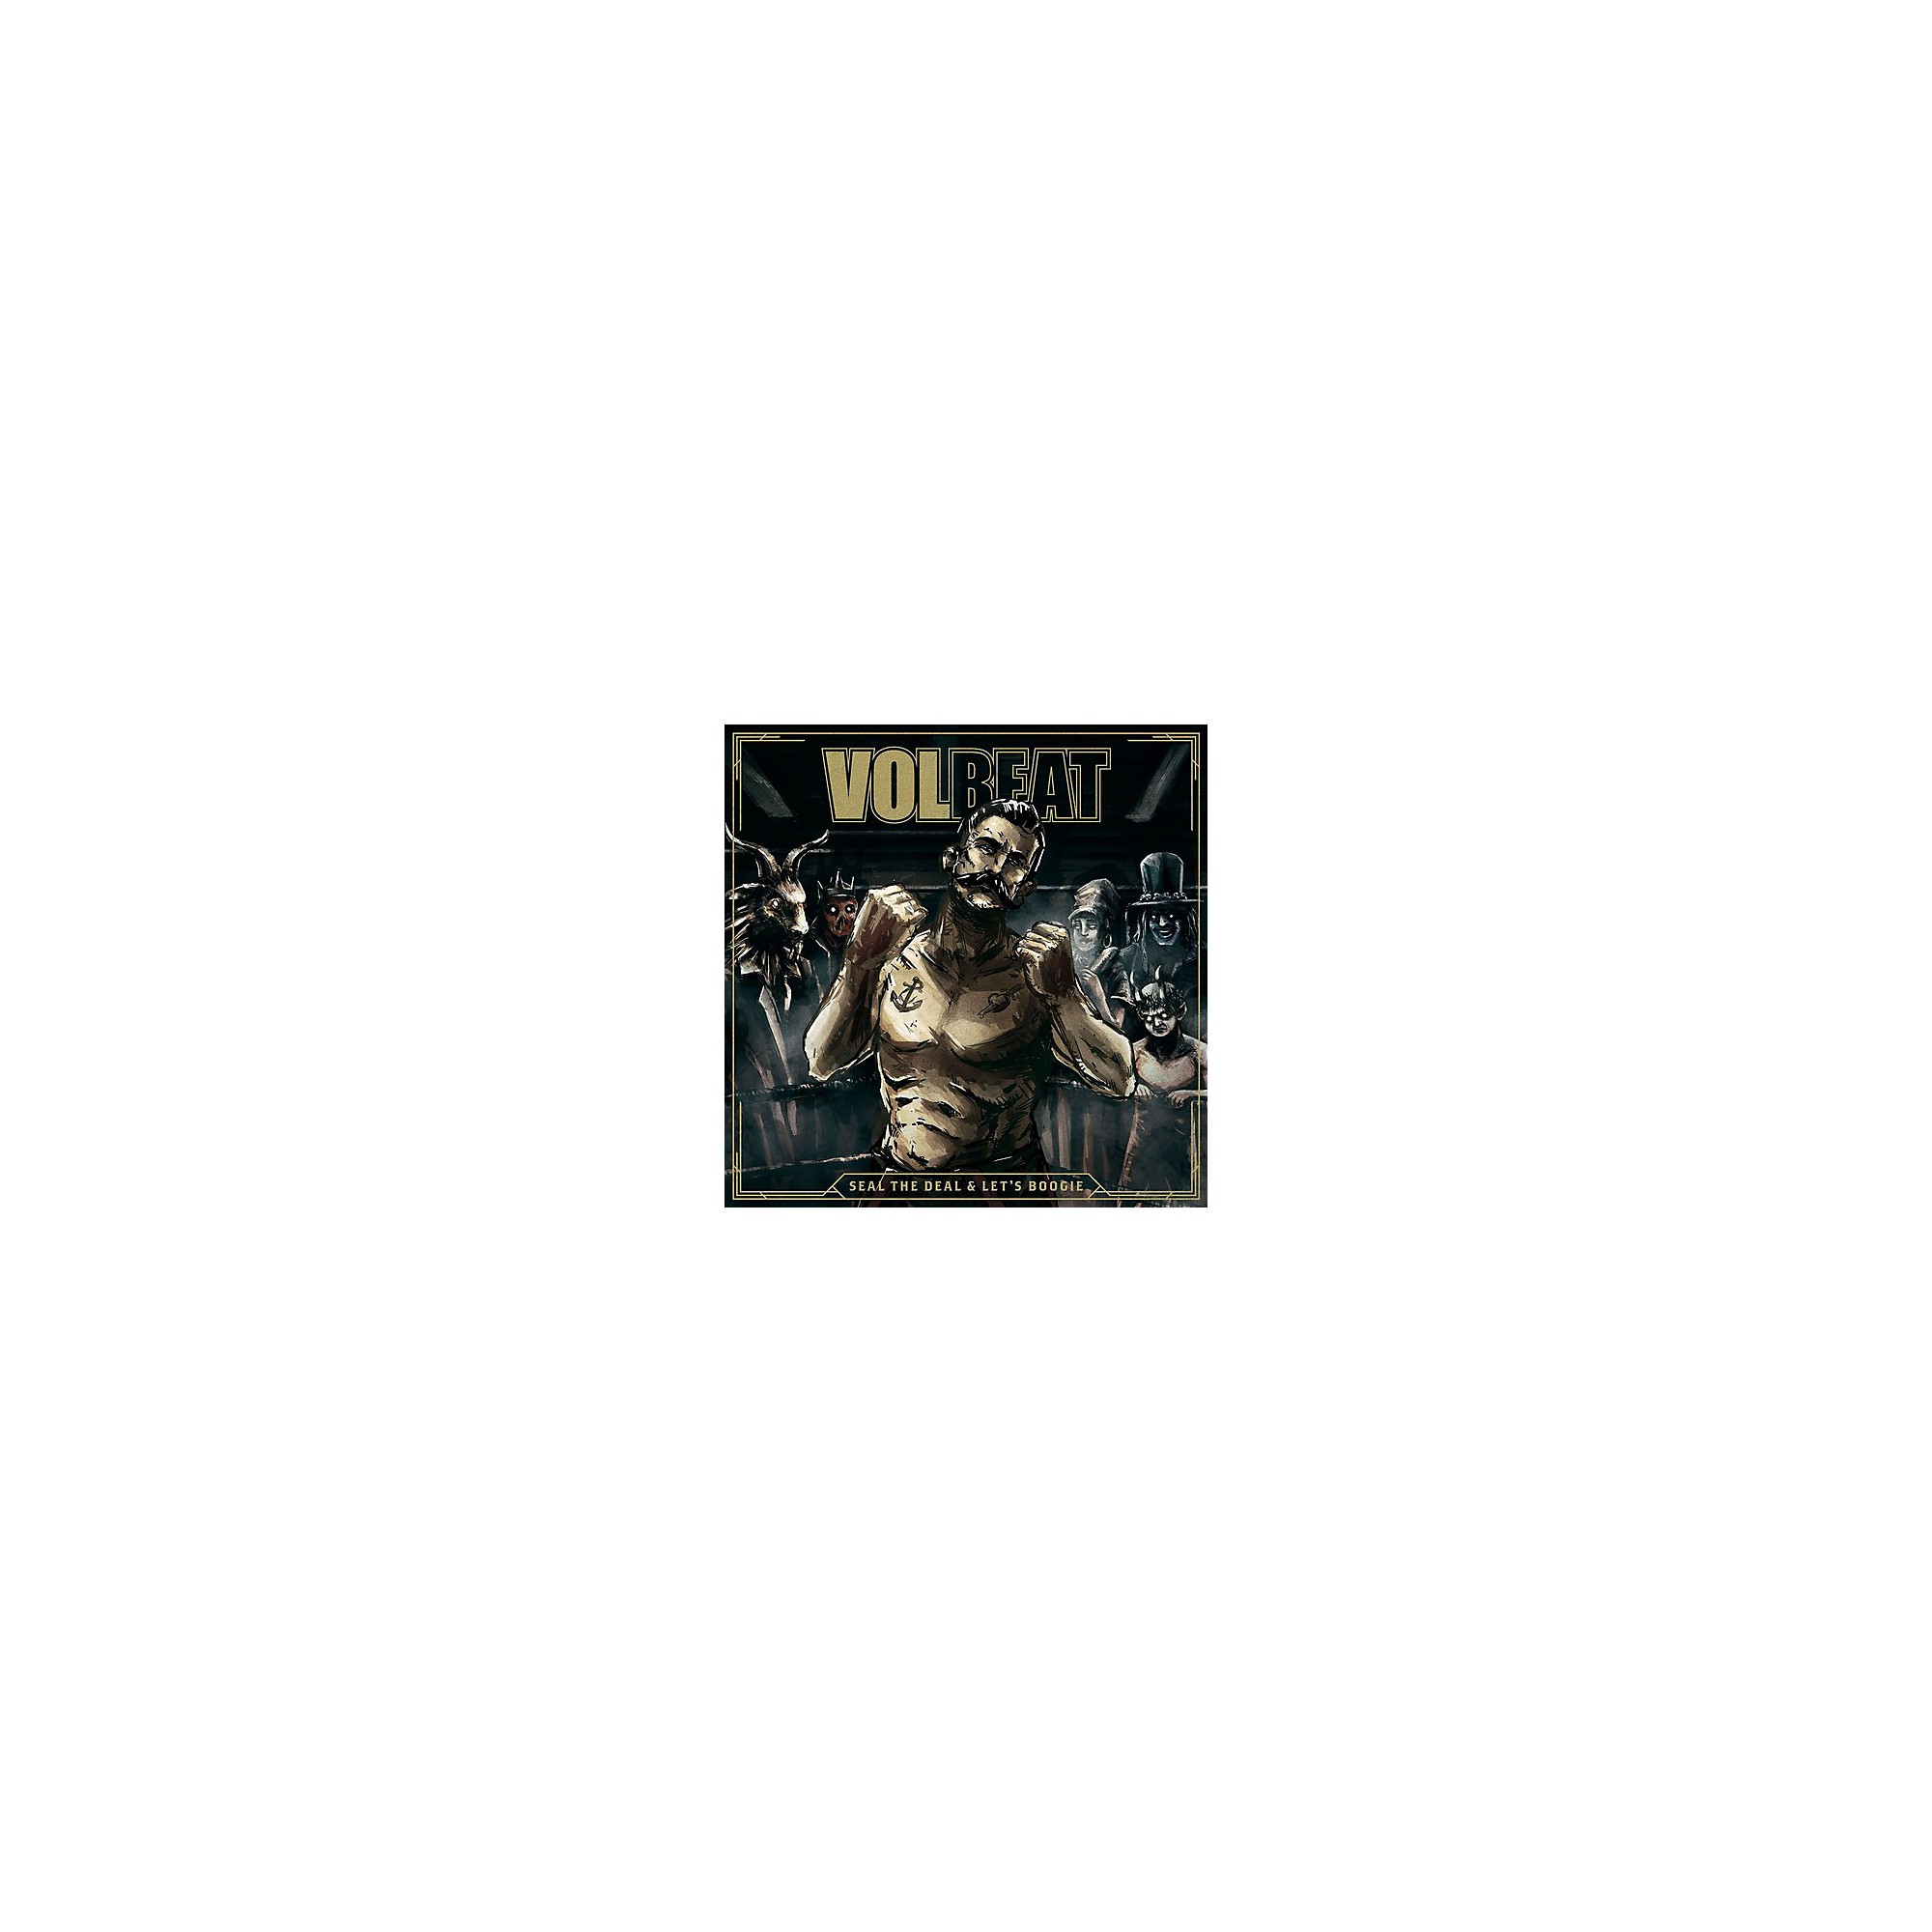 volbeat album 2016 relese date